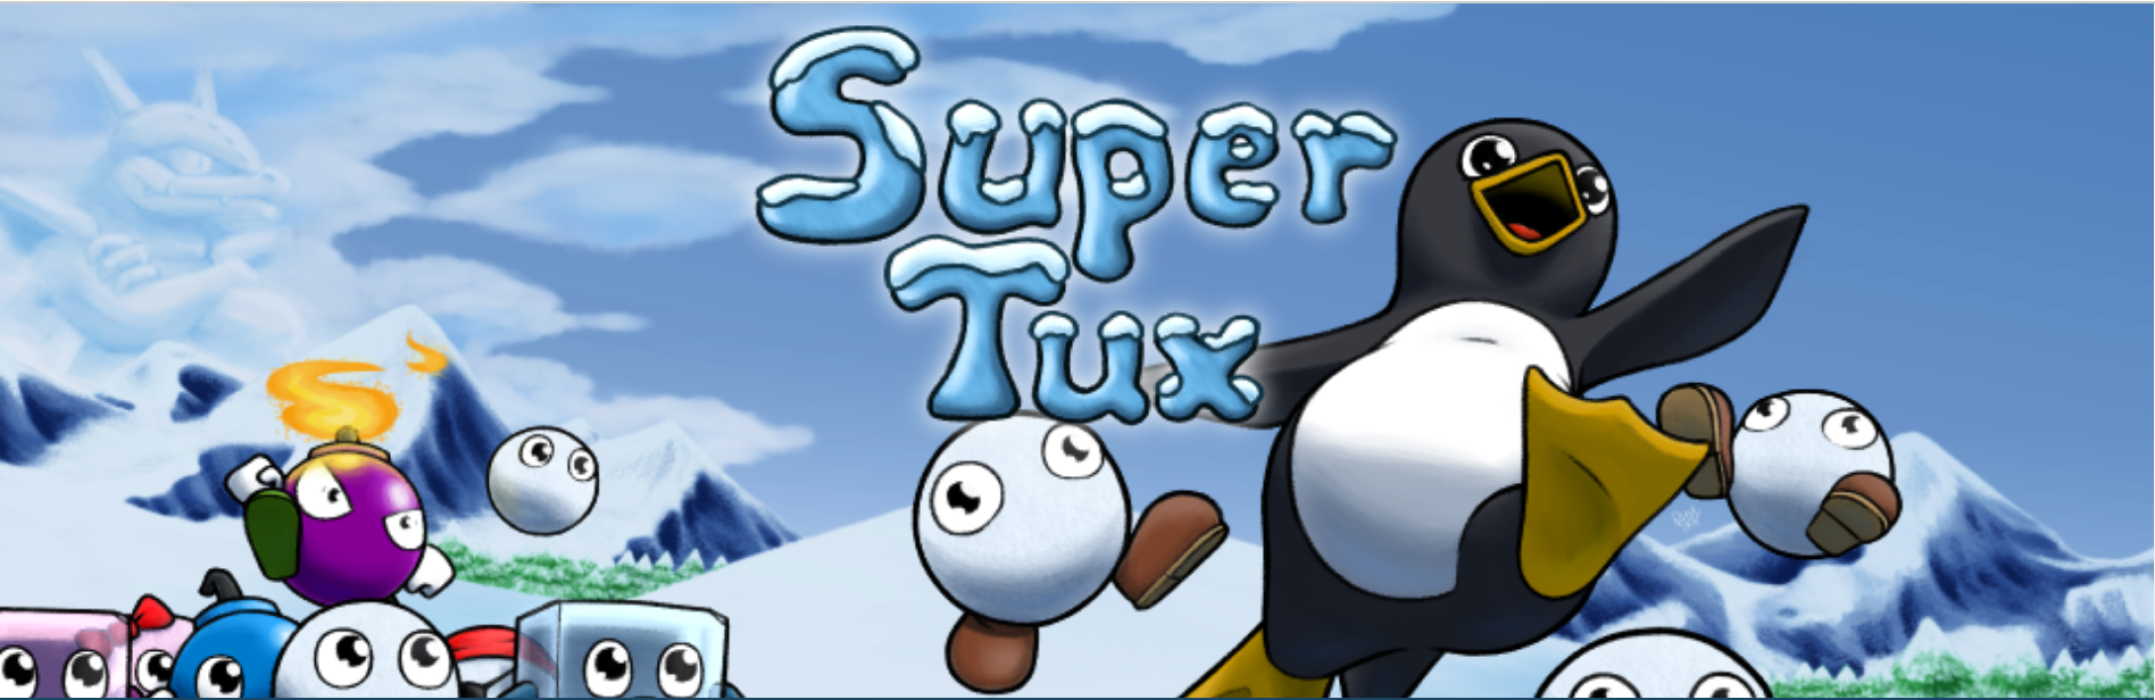 SuperTux 0.6.3 é lançado depois de um ano e meio em desenvolvimento